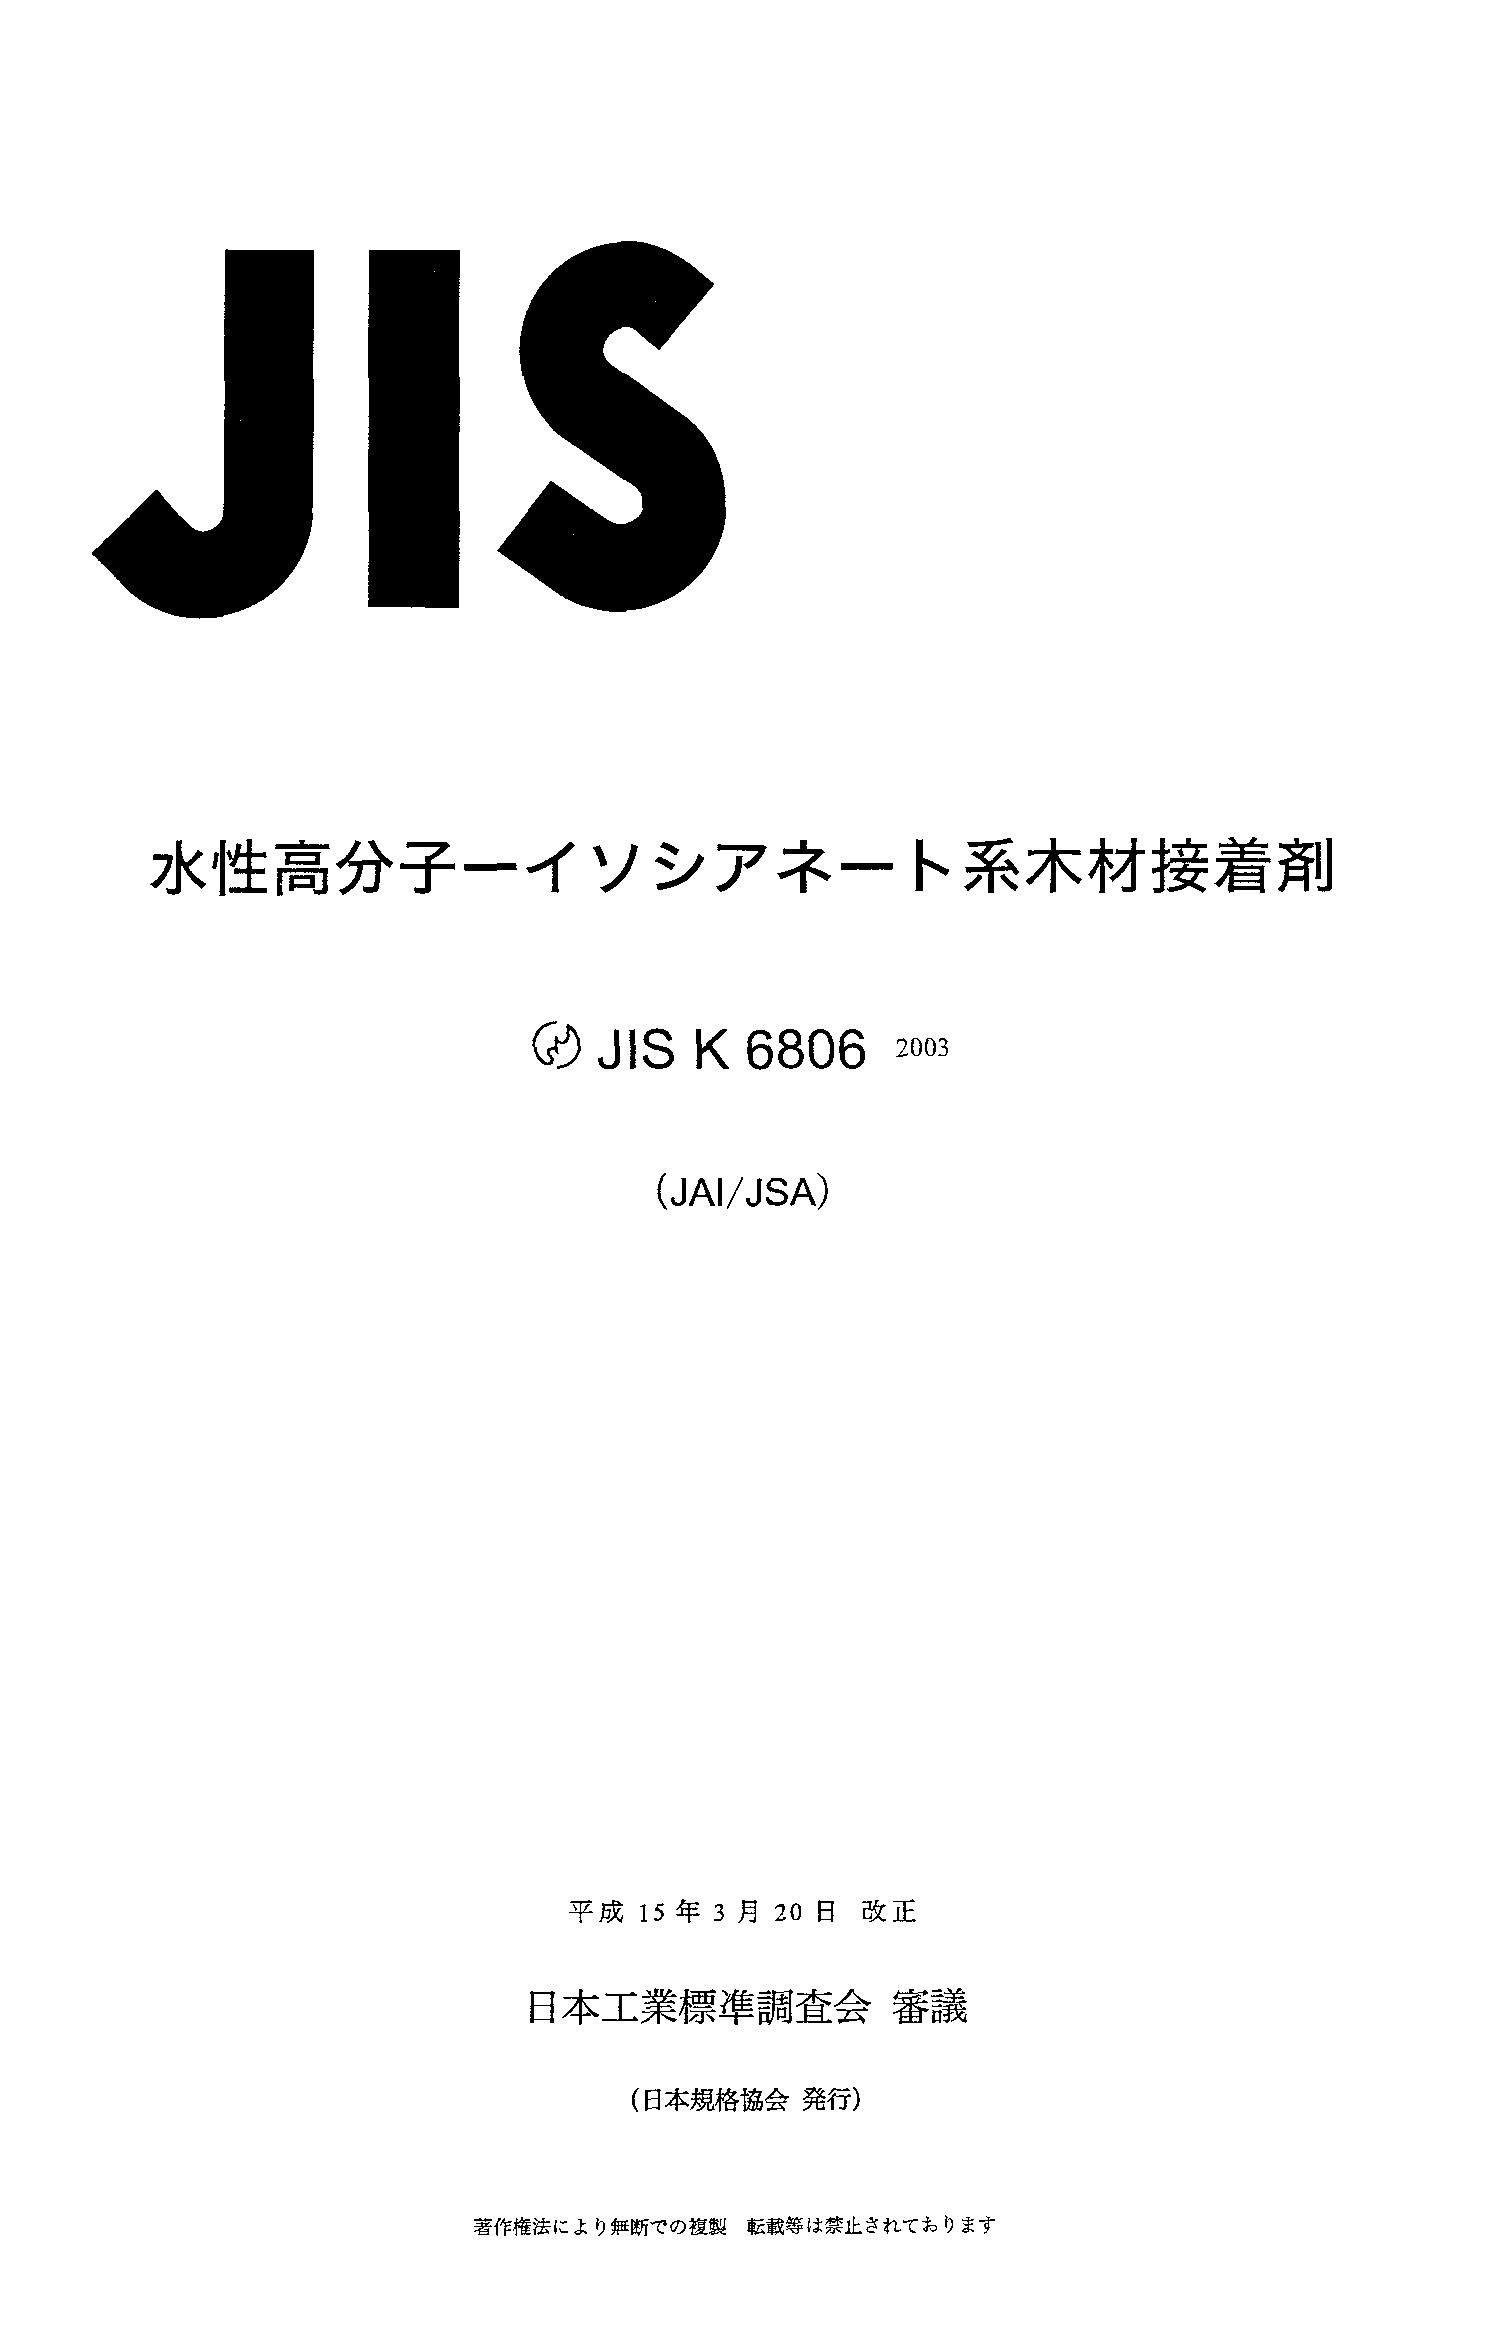 JIS K 6806:2003封面图